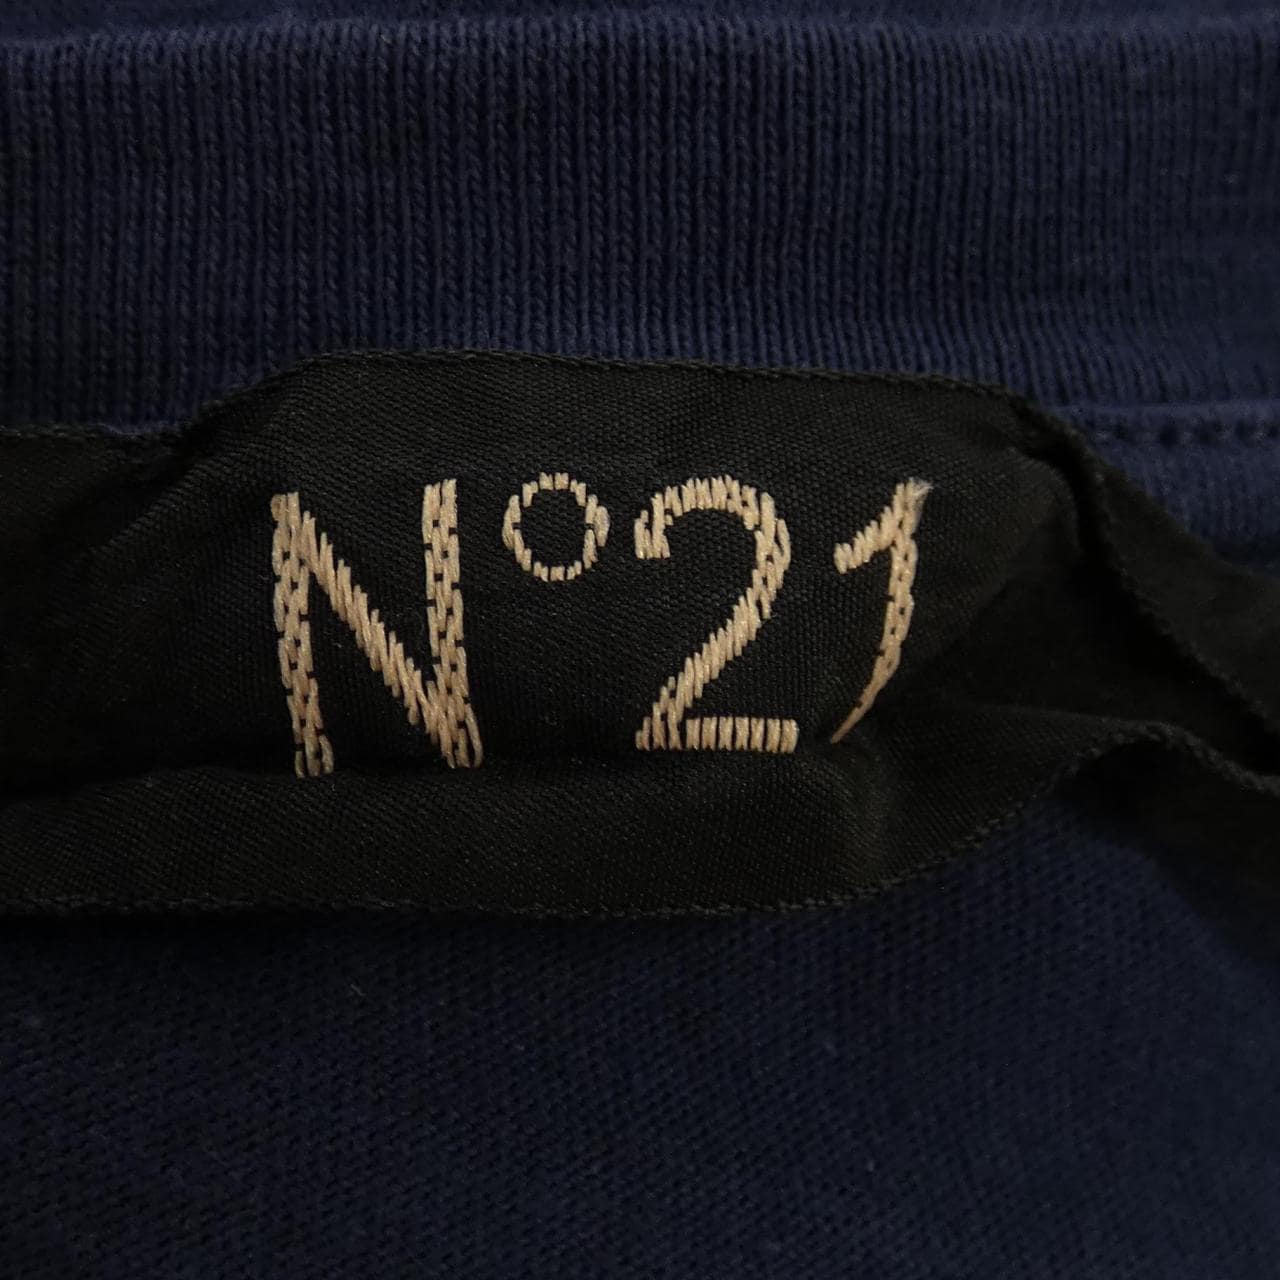 ヌメロヴェントゥーノ N°21 Tシャツ